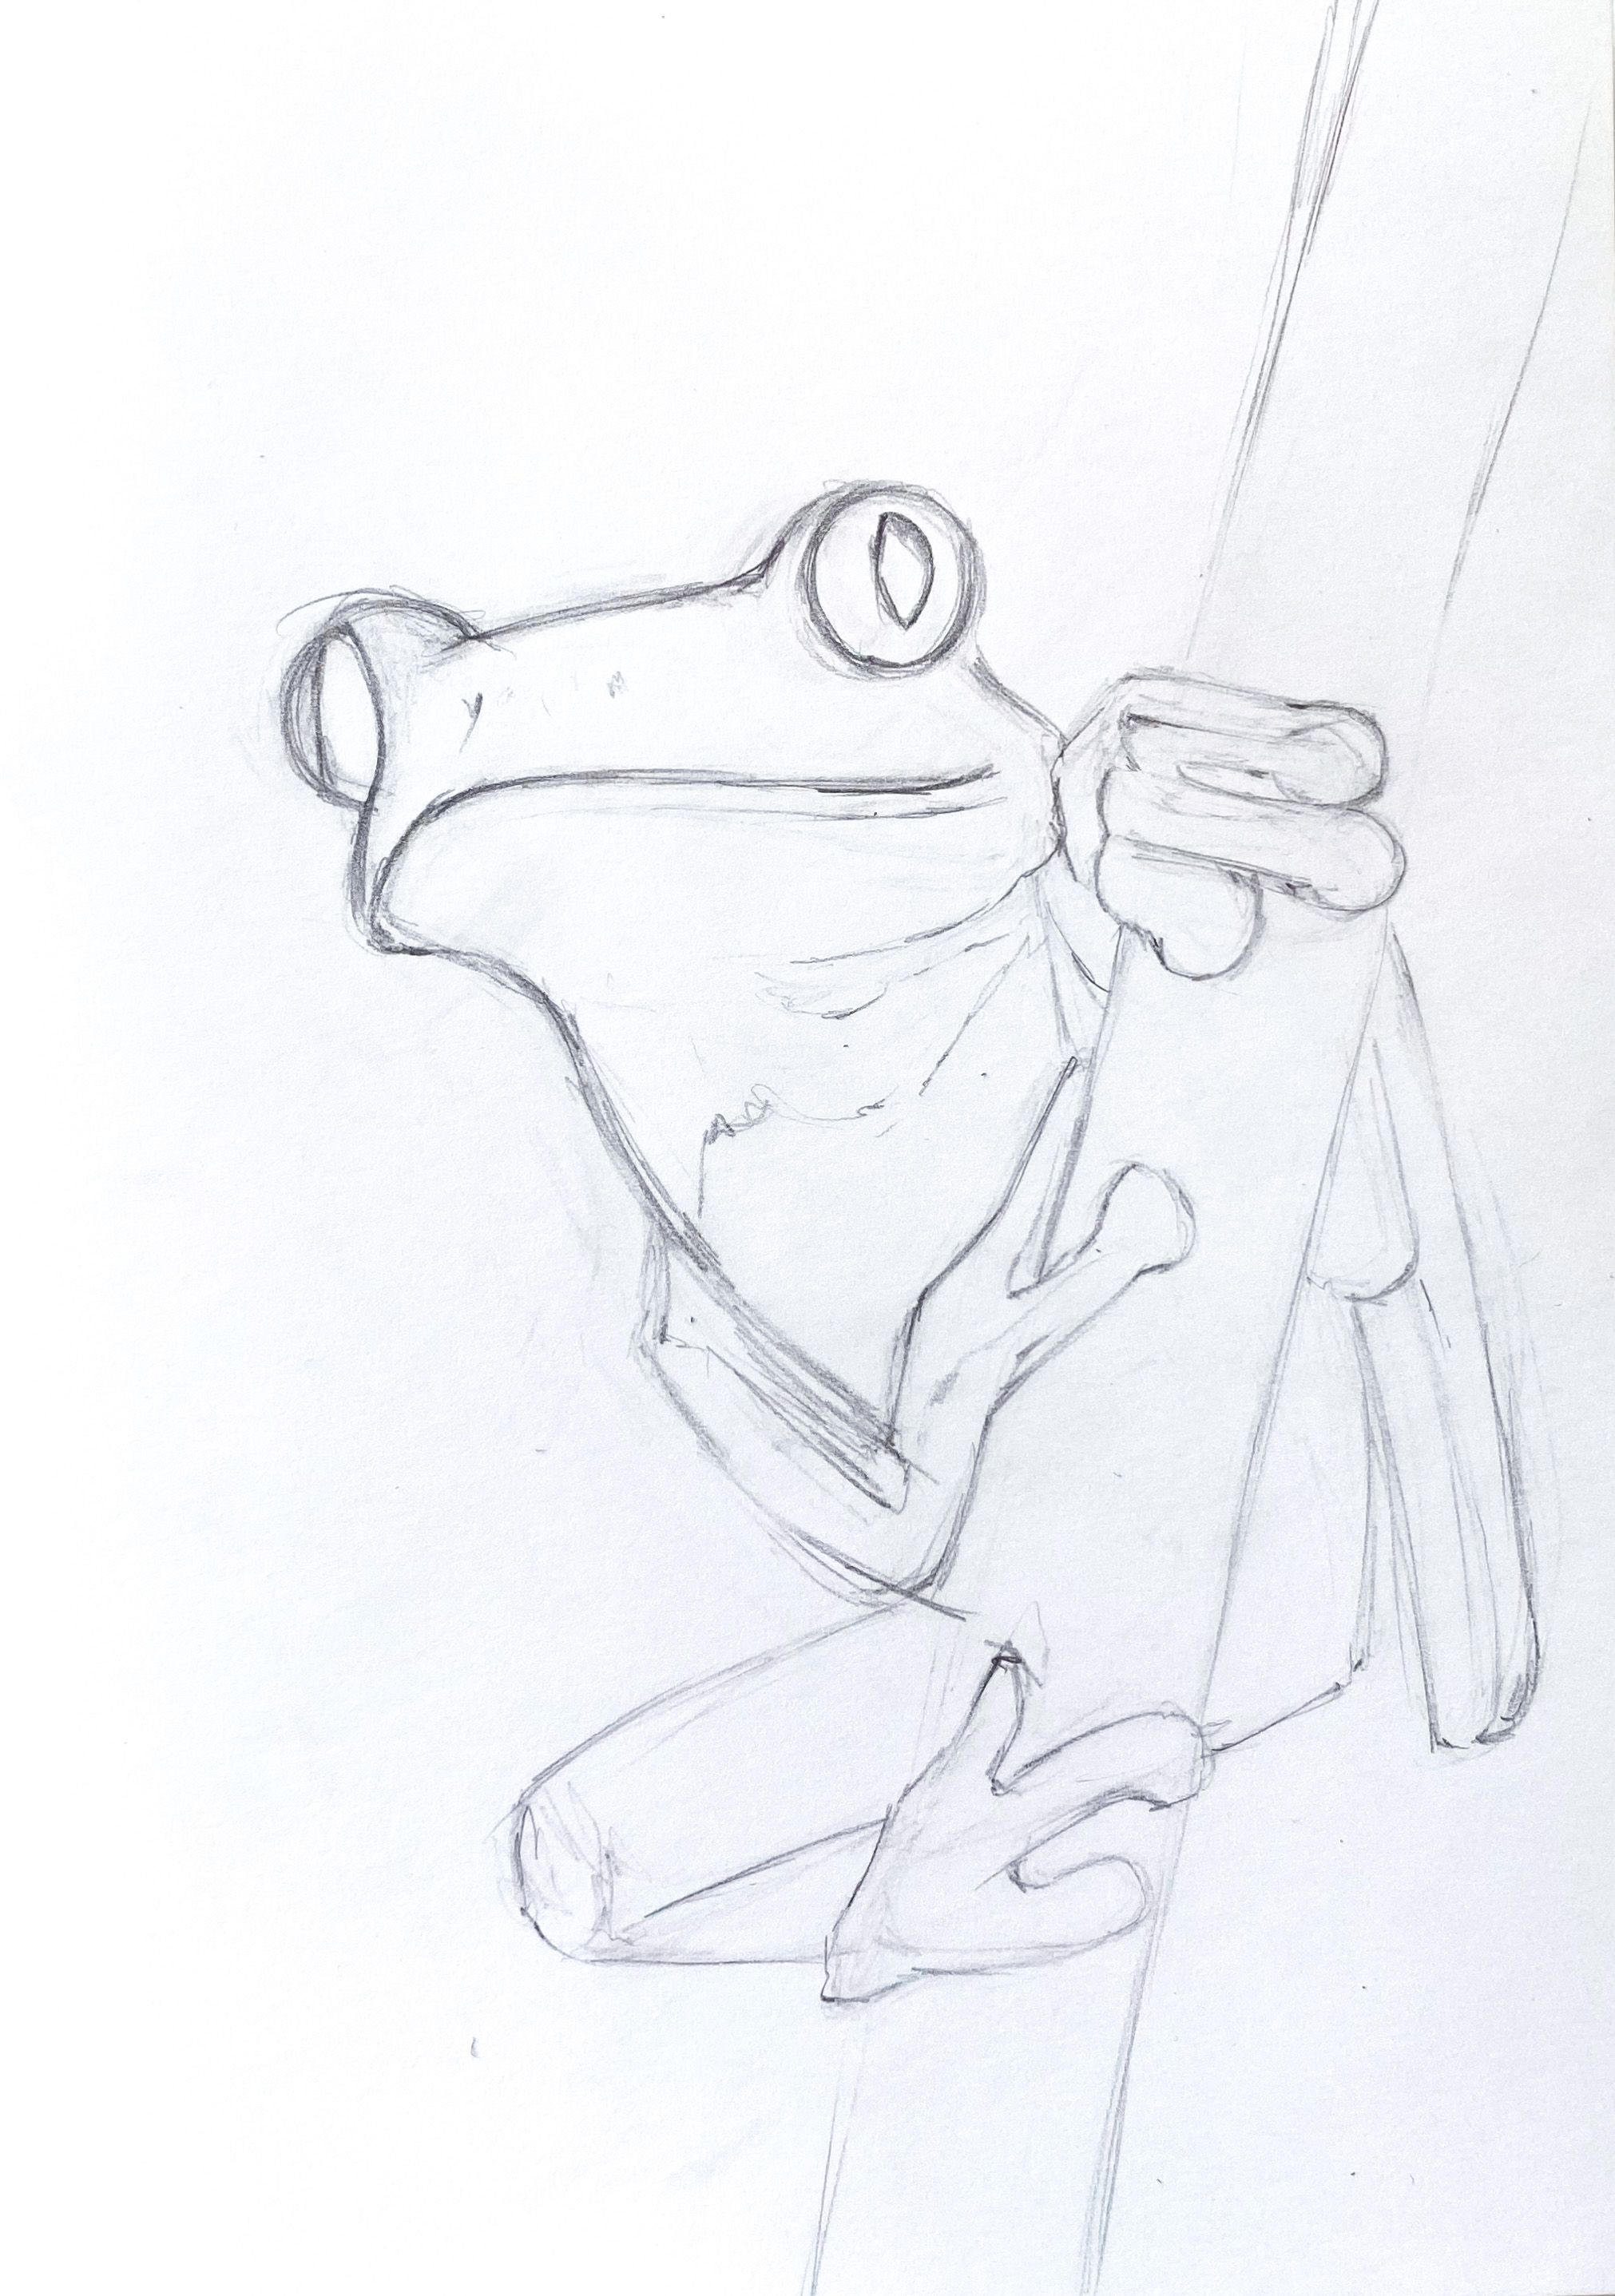 001 frog.JPG (911 KB)